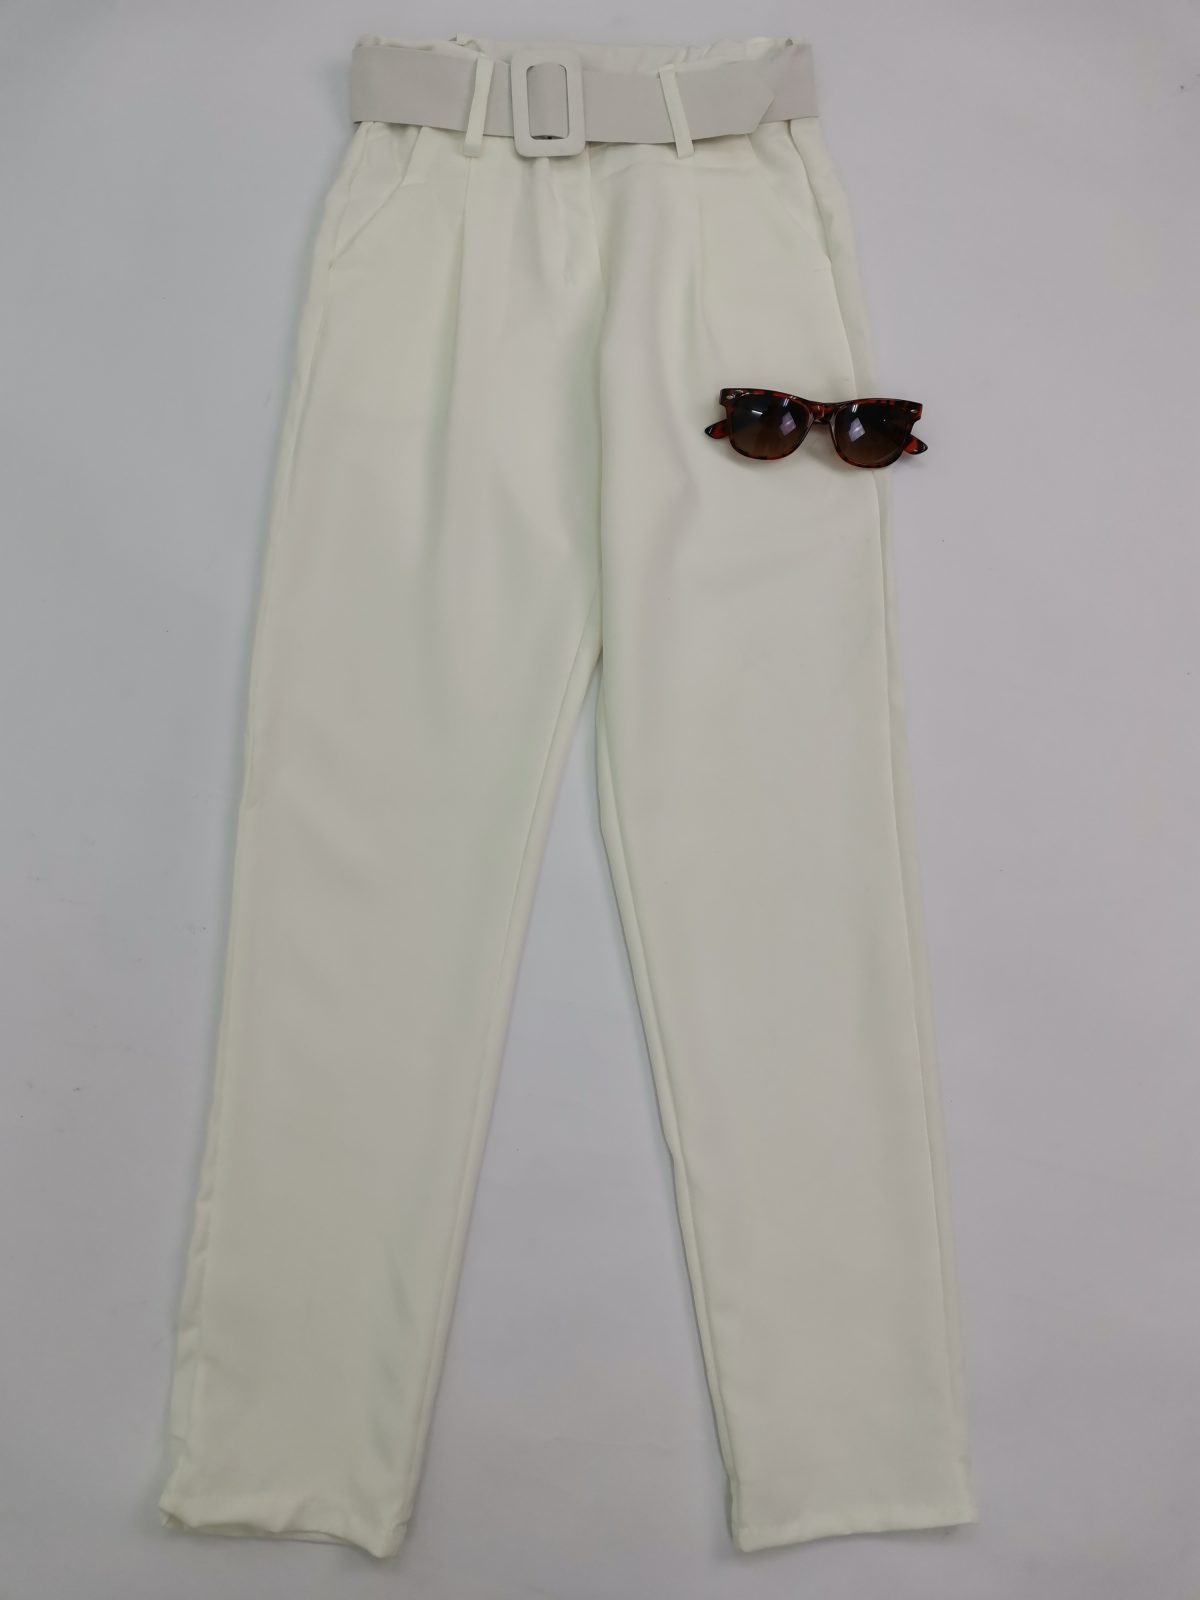 Λευκό παντελόνι ψηλόμεσο με ντυμένη ζώνη σε λευκό